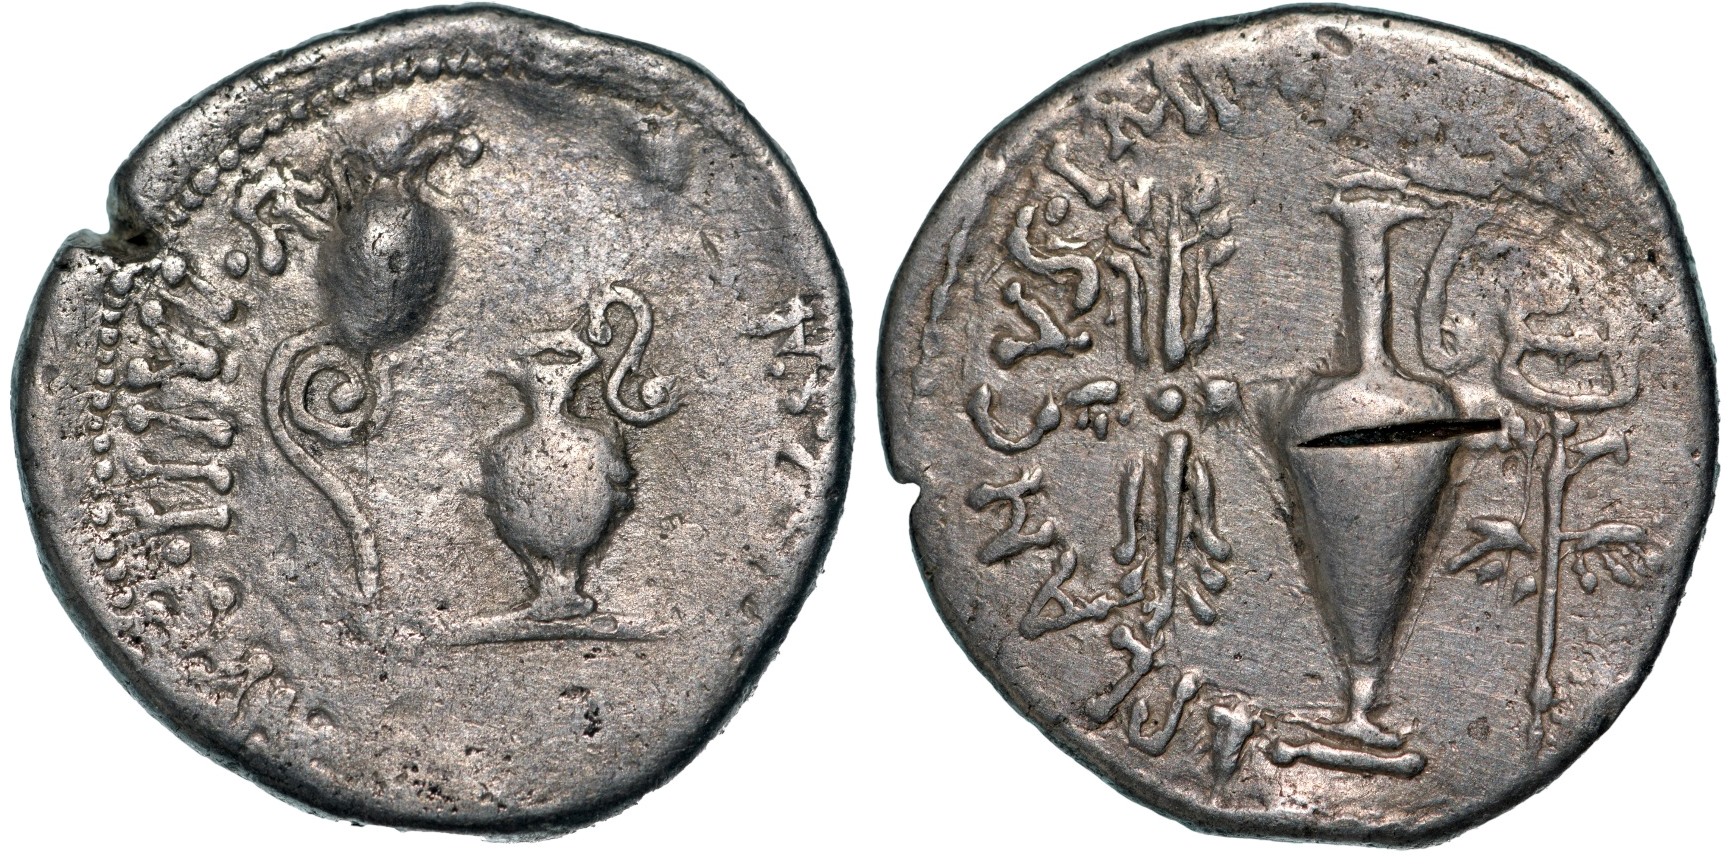 Marc Antony as Triumvir and Imperator (43-31 BC) with L. Munatius Plancus. Denarius, Silver (20mm, 3